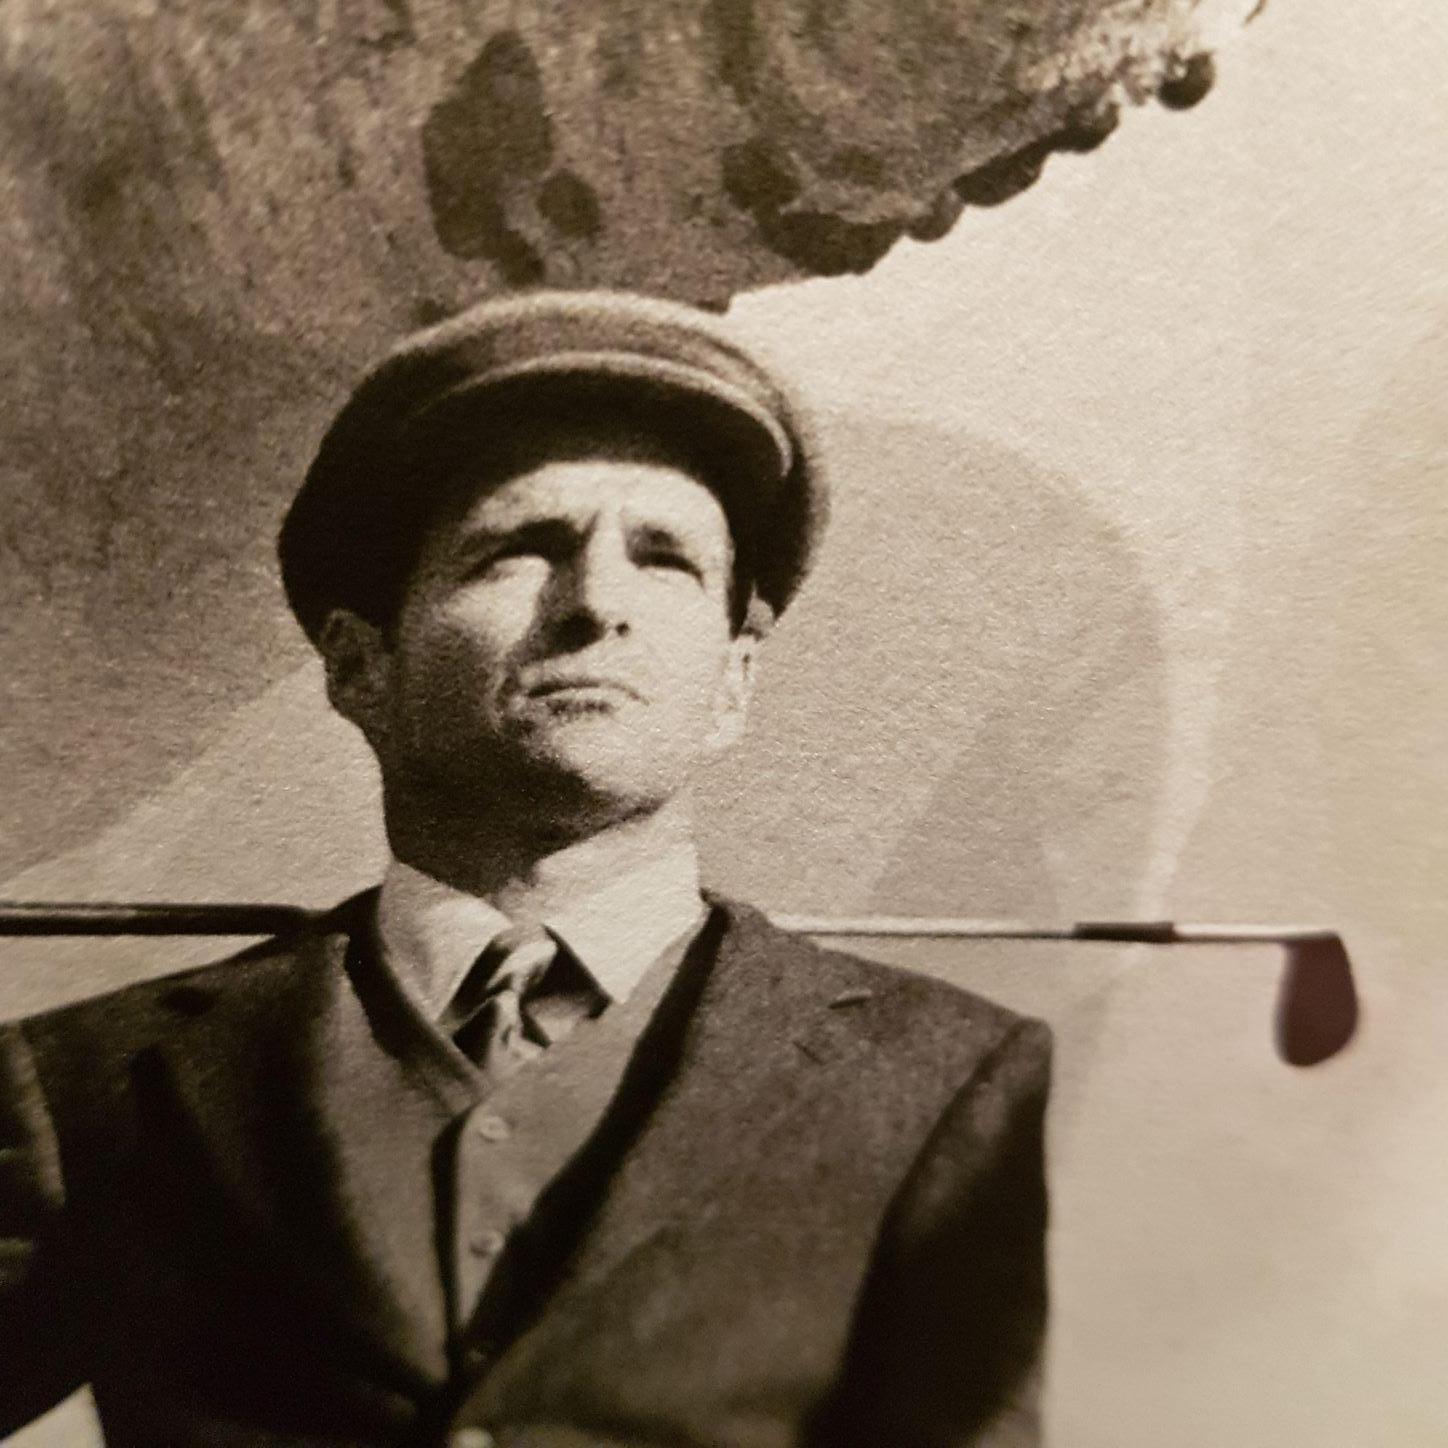 Archivdruck 'Golfer im Baum
Ausgabe 5/25
Pebble Beach, C.A., Vereinigte Staaten von Amerika 1998

Rodney Smith war ein bekannter Fotograf, dessen skurrile Arbeiten zu Vergleichen mit denen des surrealistischen Malers Rene Magritte einluden. Er